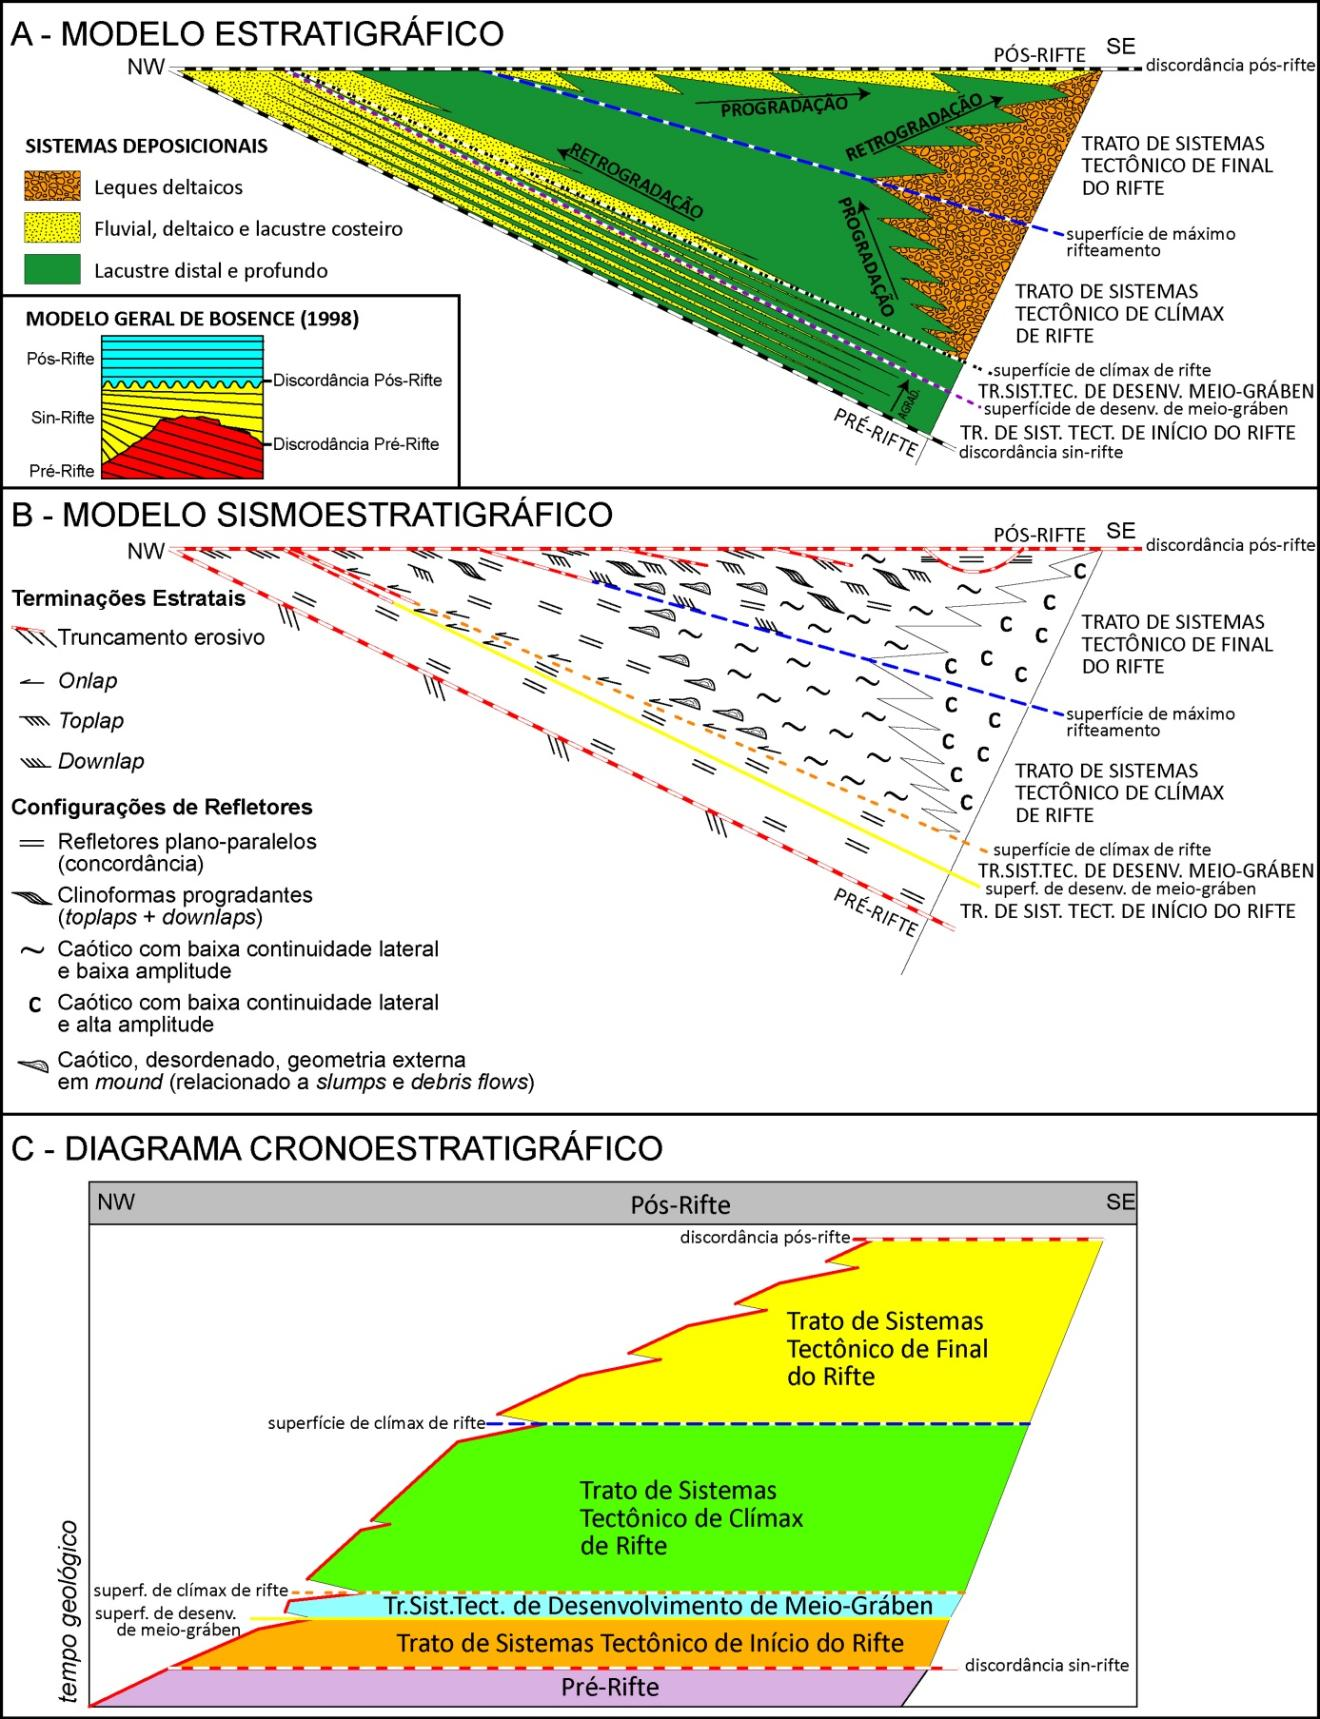 Figura 18: modelo extraído de Kuchle & Scherer (2010) mostrando em a) o modelo estratigráfico, b) o modelo sismoestratigráfico e em c) a carta cronoestratigráfica de uma bacia rifte, com os tratos